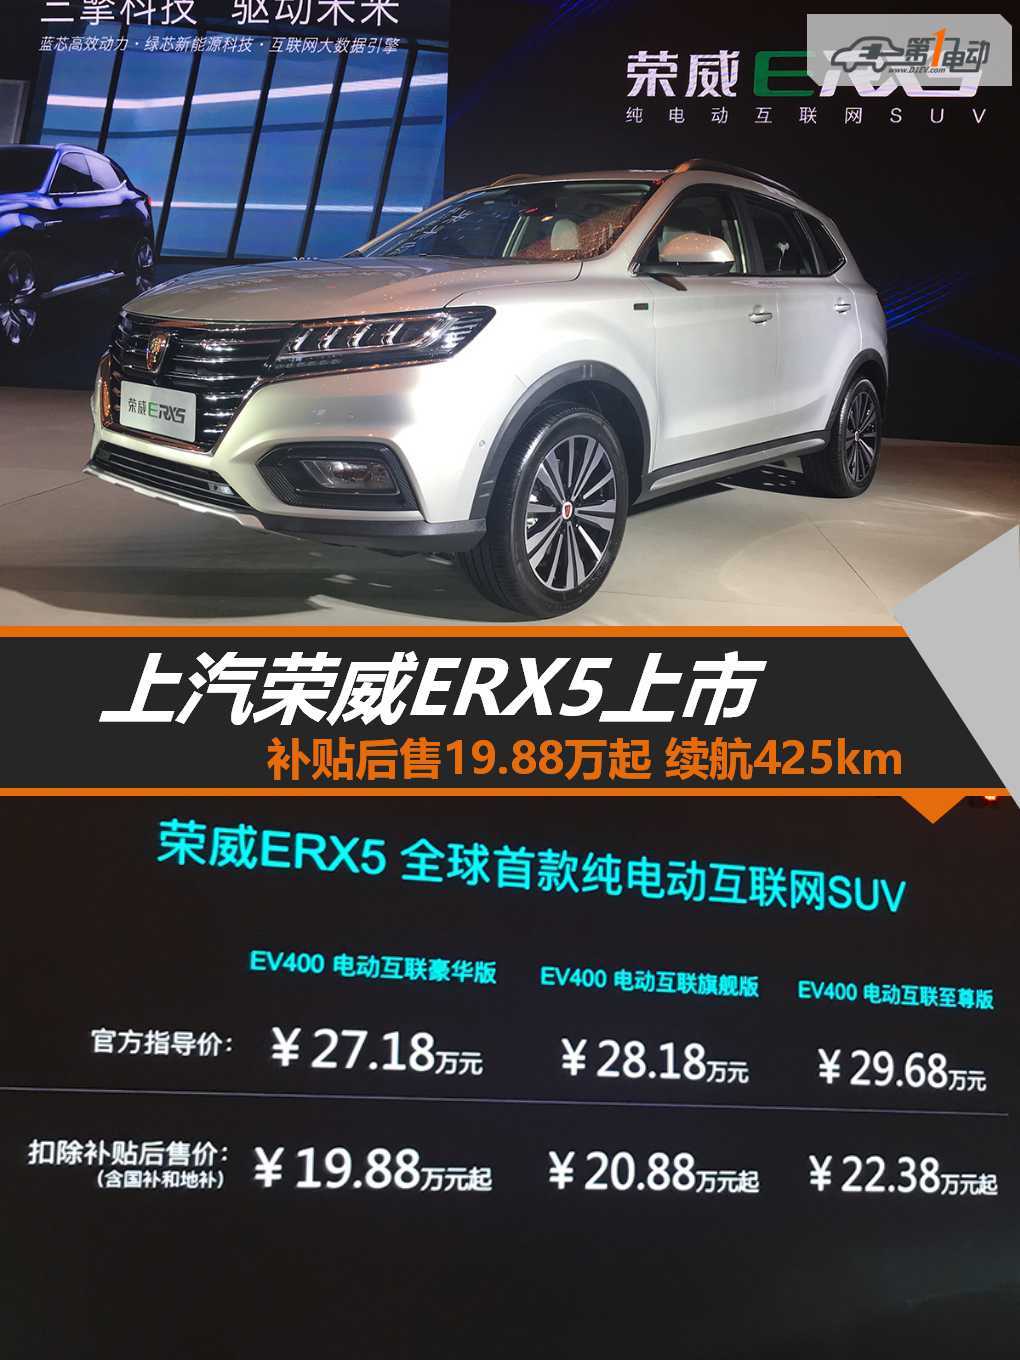 一周新车 | 上汽荣威ERX5正式上市;宝马未来概念座舱中国首秀